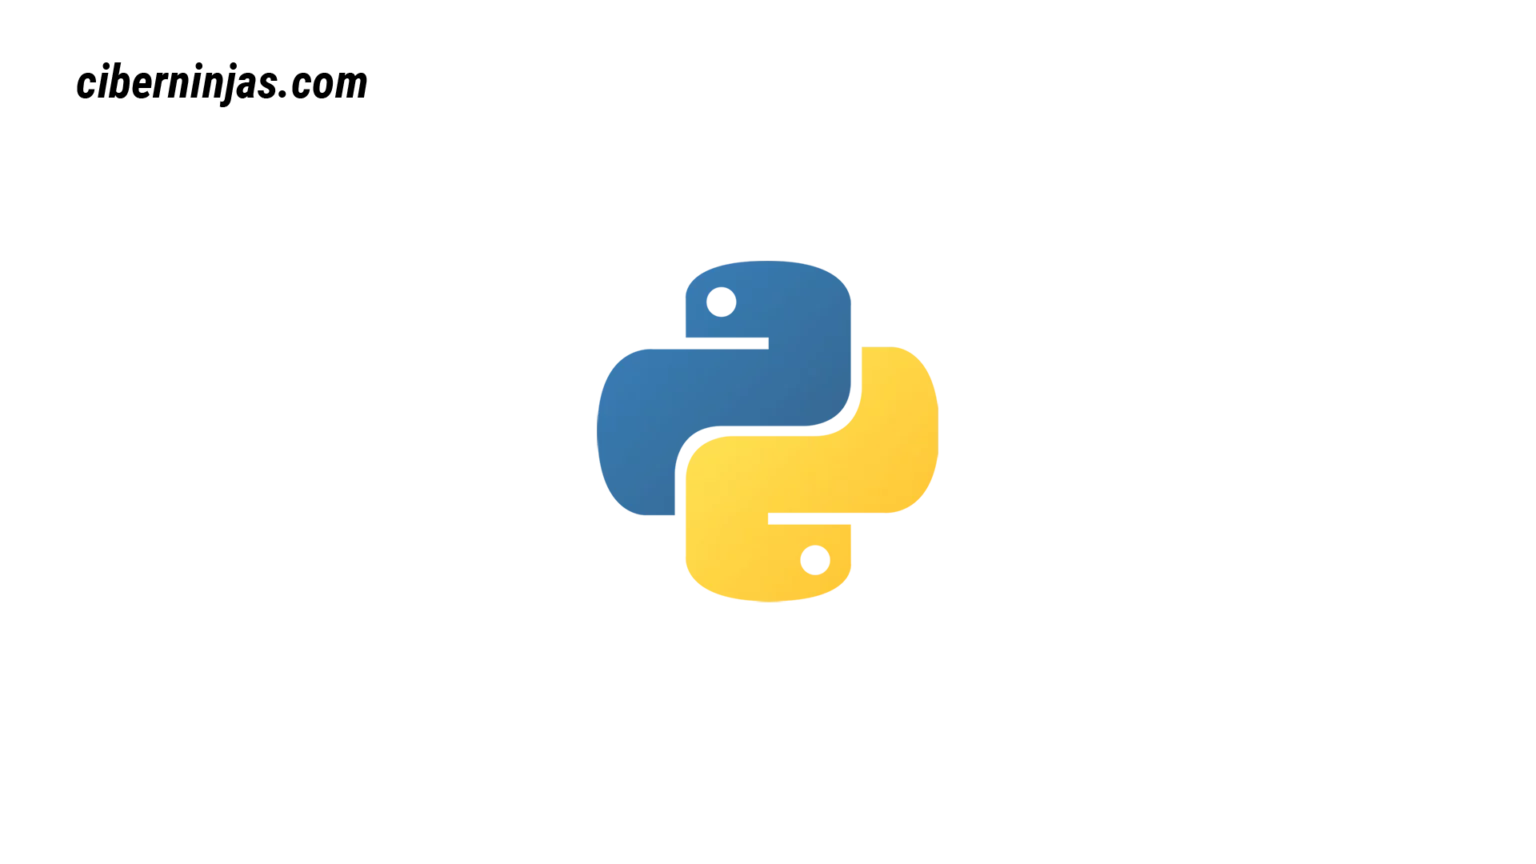 Actualidad y novedades sobre el lenguaje de programación Python